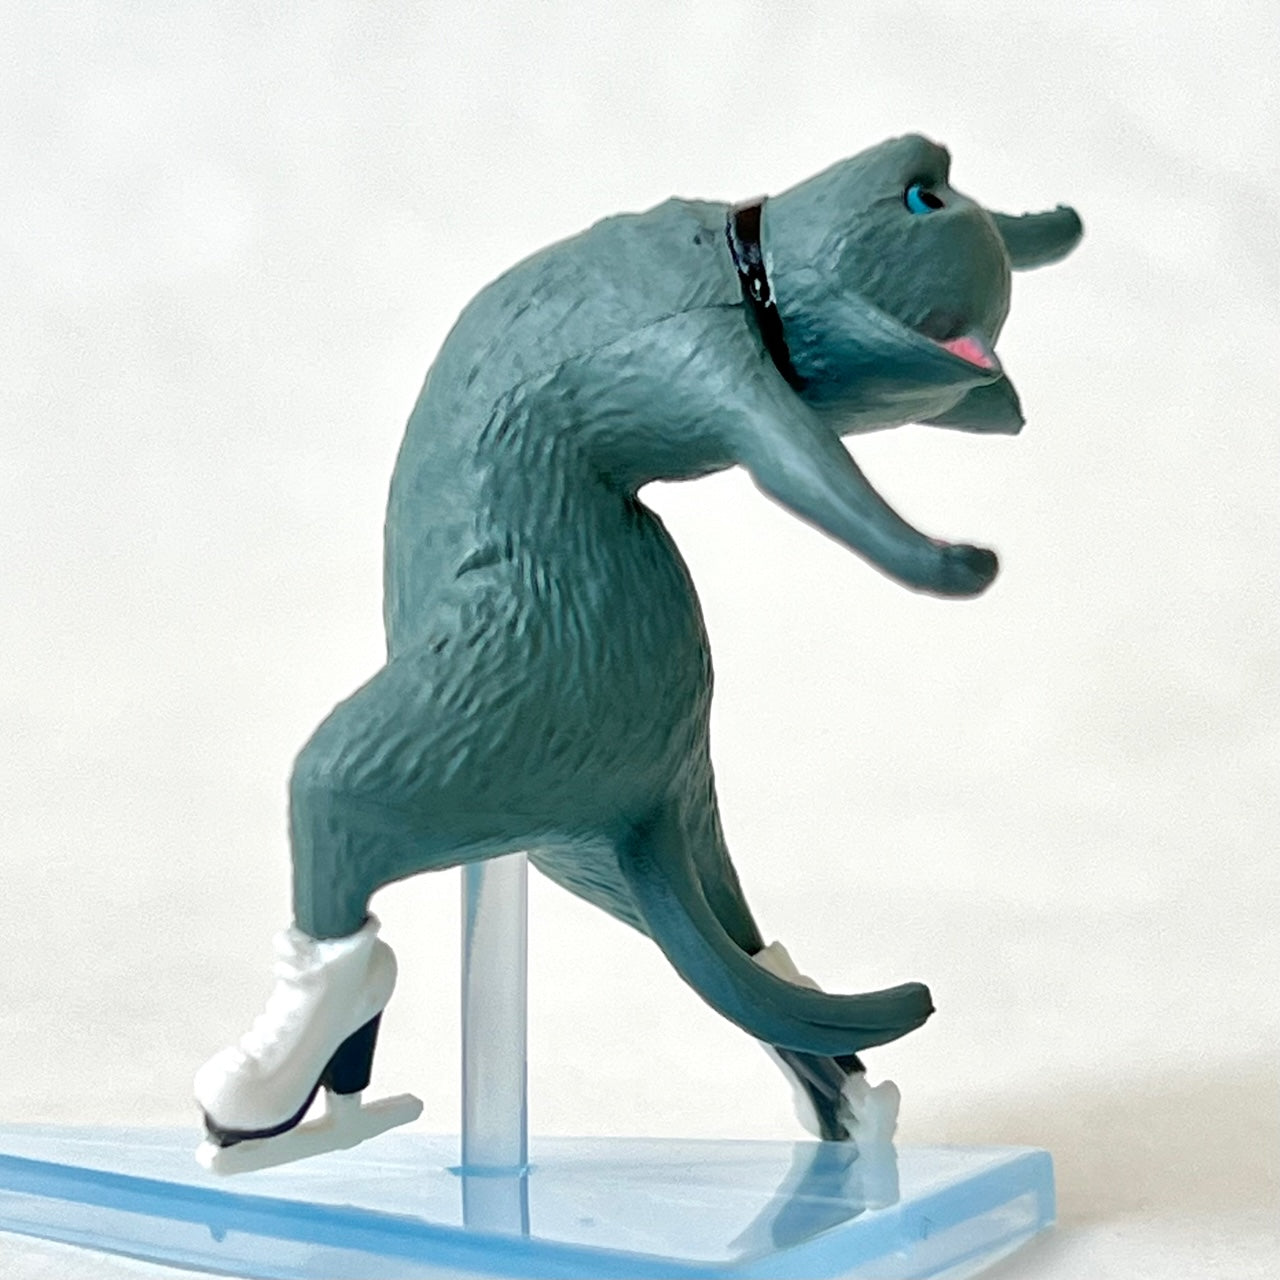 70261 Cat Ice Skating Figurine Capsule-5